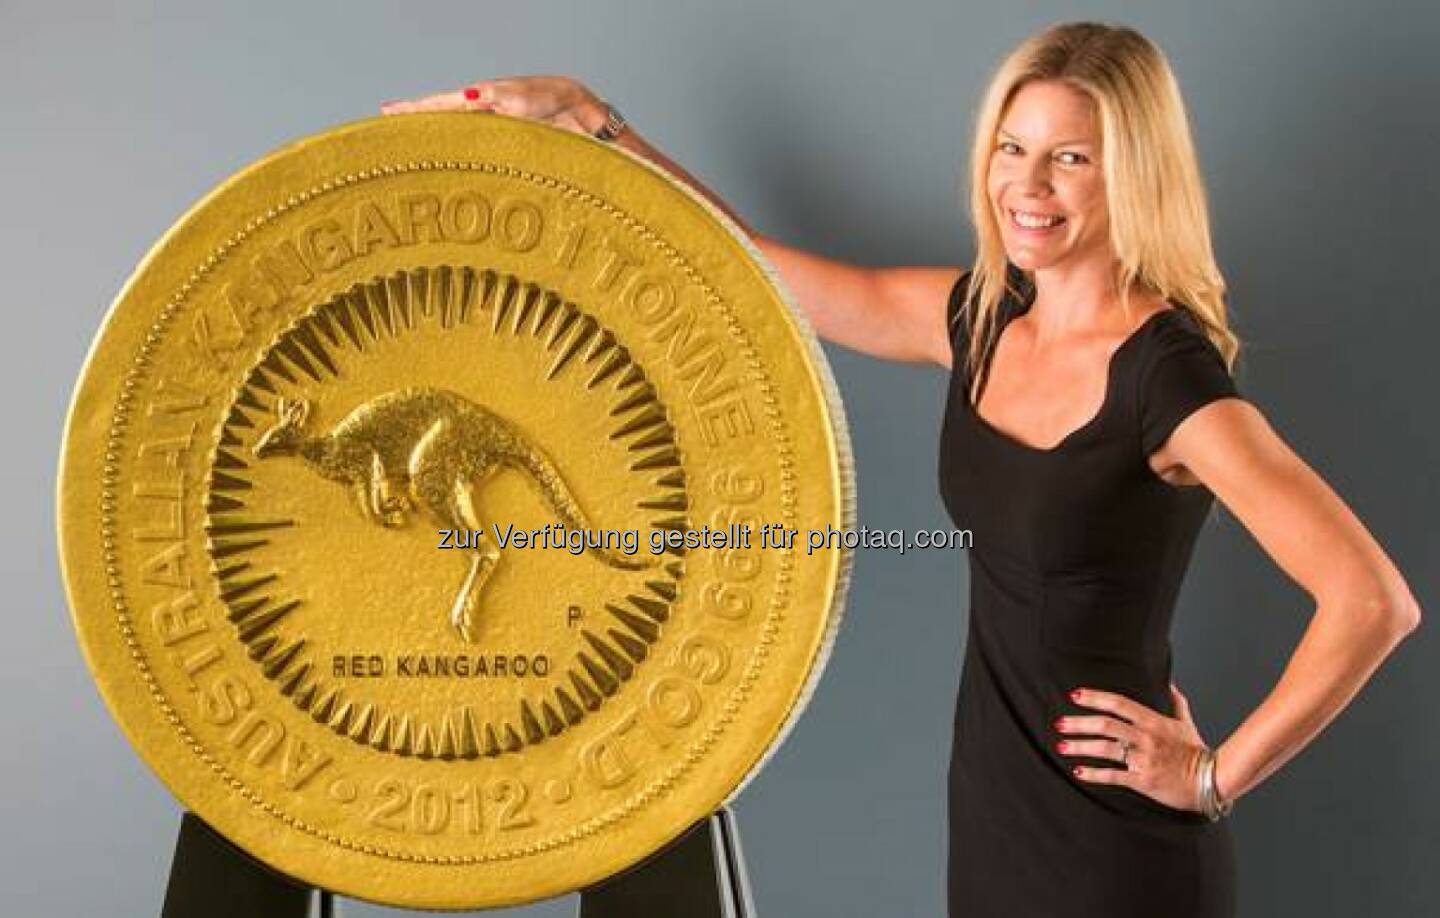 Die größte Goldmünze der Welt wird am 27. Januar von 14.30 bis 20.00 Uhr und am 28. Januar von 09.00 bis 17.30 Uhr im Münchner Goldhaus von pro aurum ausgestellt. Der sogenannte „Red Känguru“ wurde von der Perth Mint hergestellt, der australischen Münzprägeanstalt (c) pro aurum